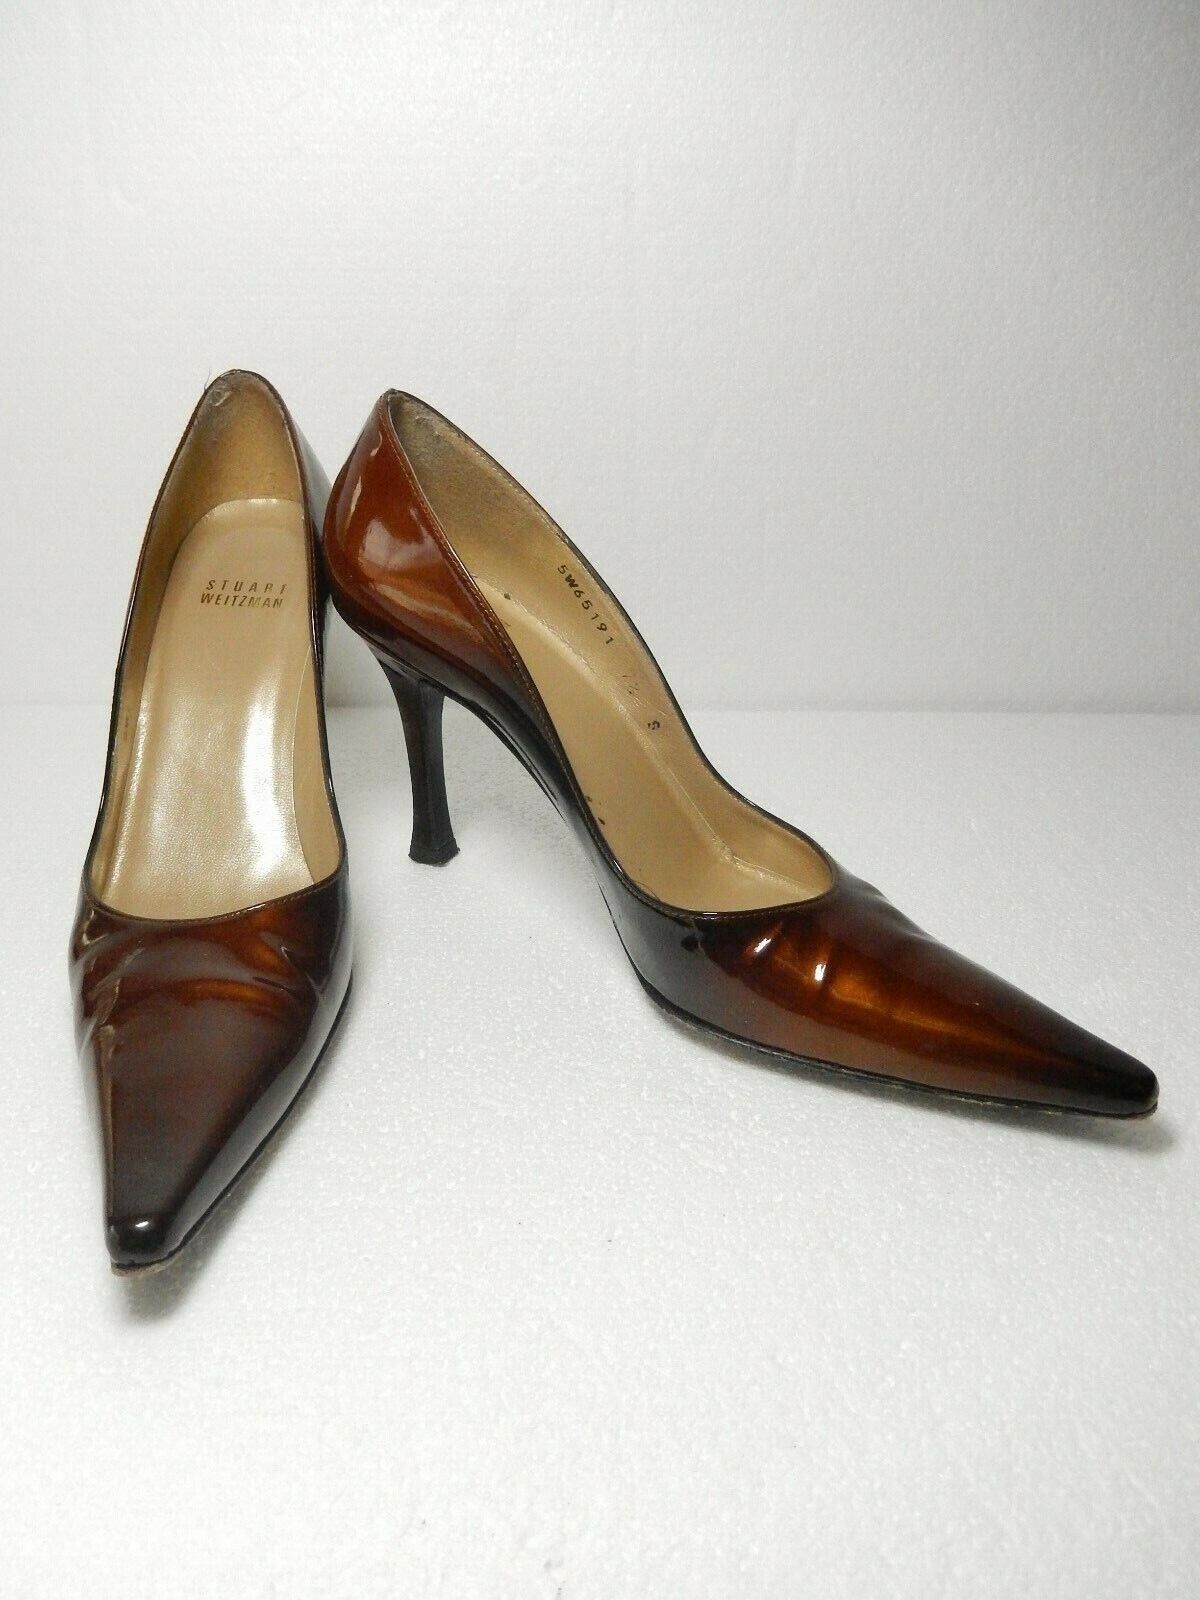 Stuart Weitzman Sz 7.5 S Bronze Patent Leather Pointed Toe Stiletto Pumps Shoes